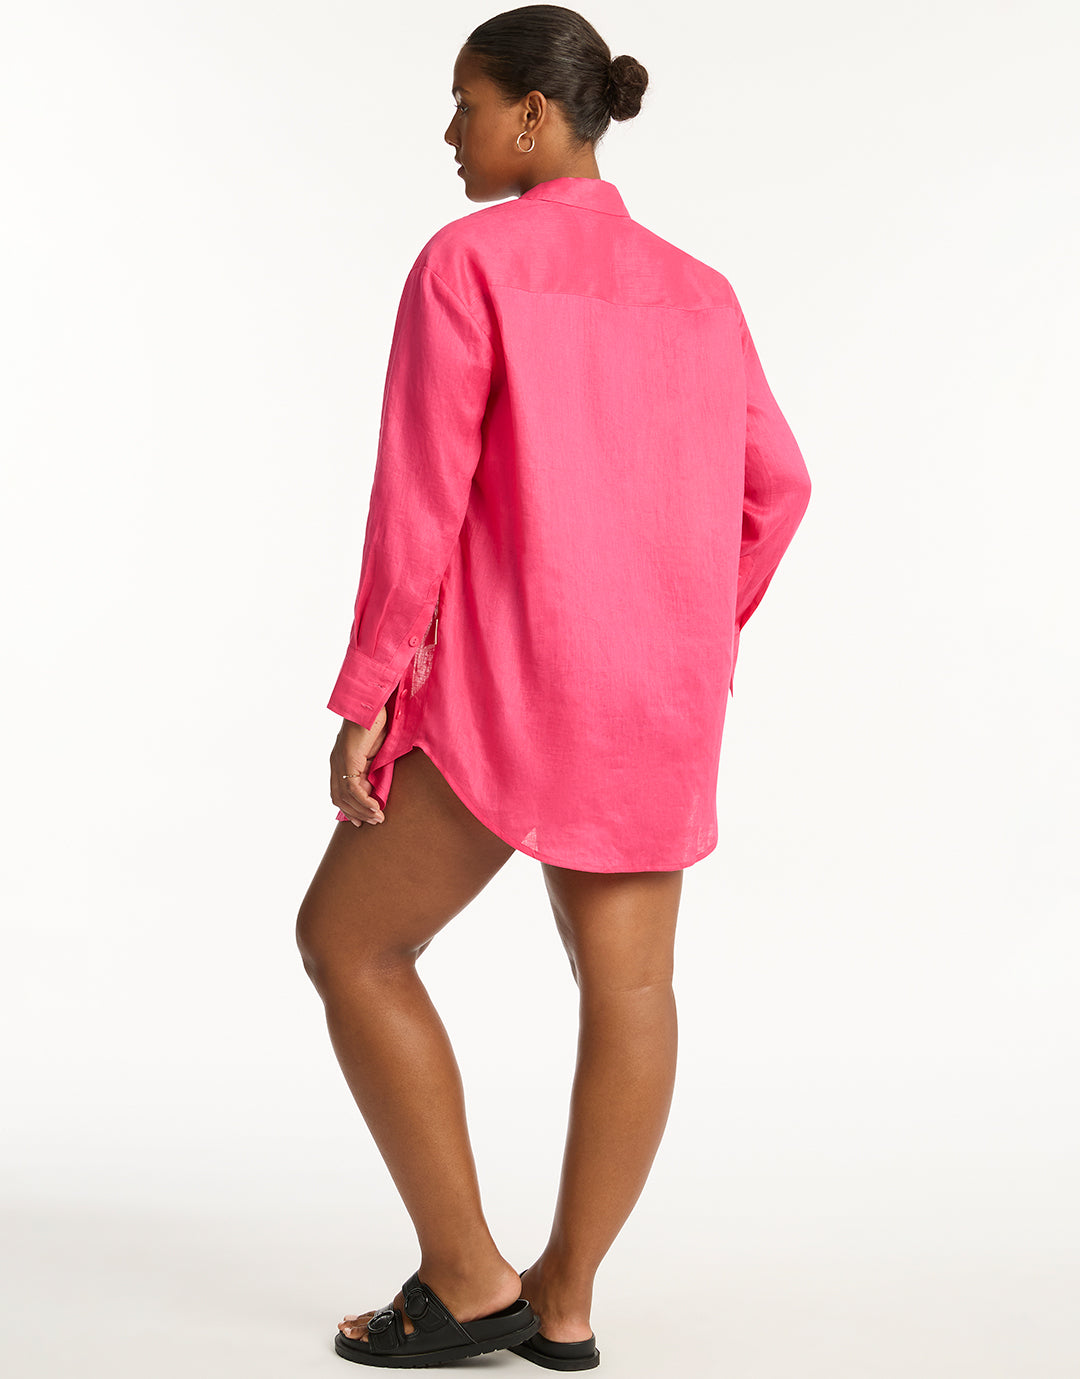 Resort Linen Beach Shirt - Hot Pink - Simply Beach UK